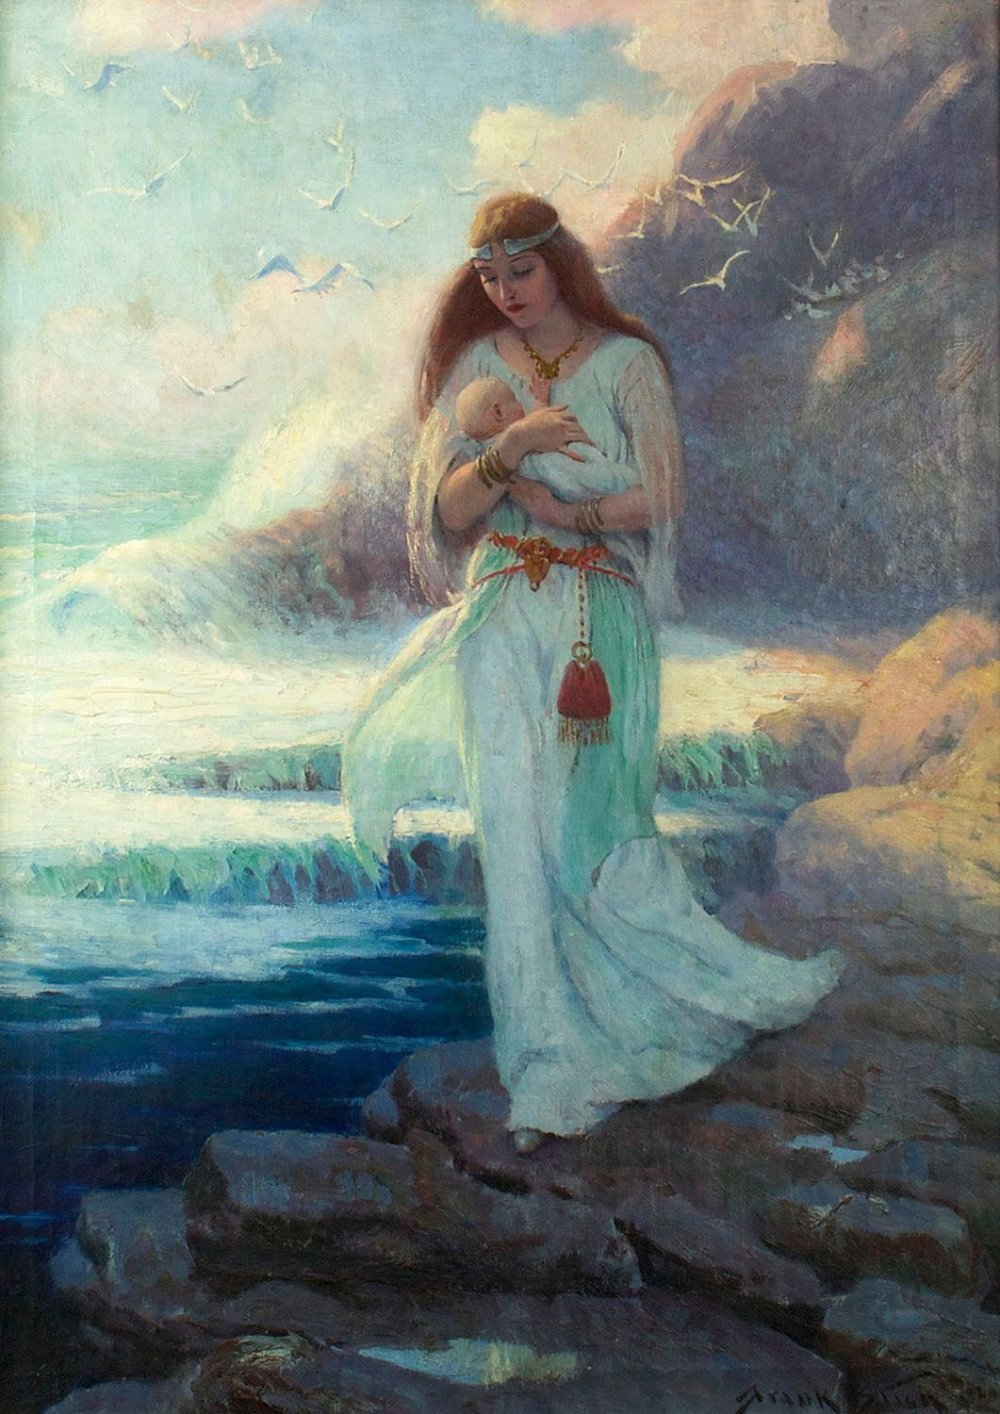 Славянская богиня Лада Ожиганов